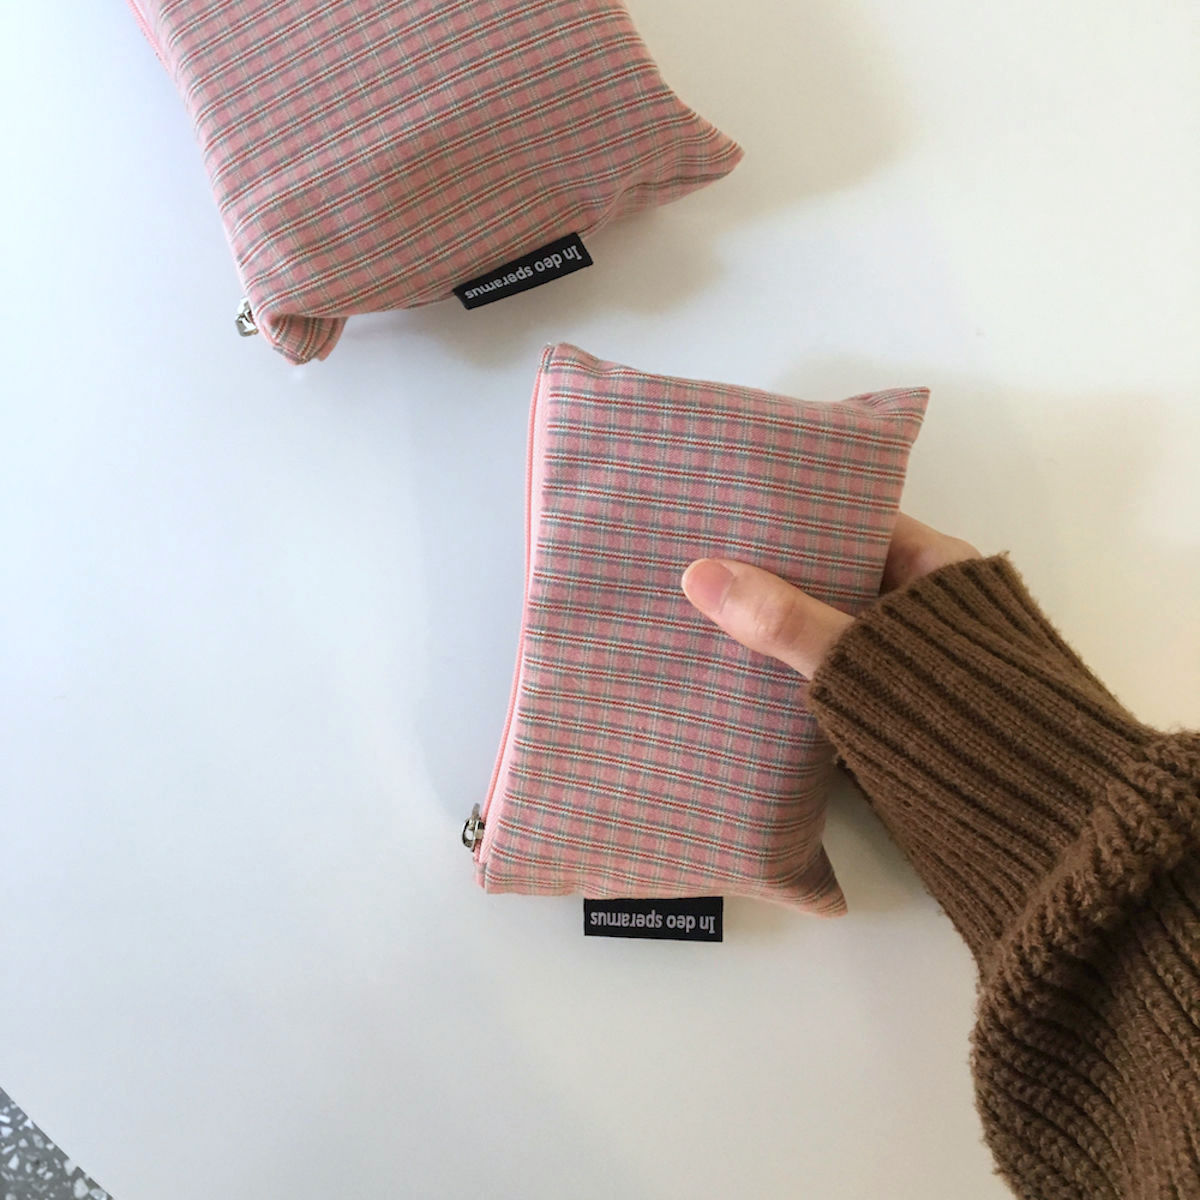 빈티지 핑크 파우치(Vintage pink pouch) 9,500원 - 인데오스페라무스 패션잡화, 파우치, 다용도파우치, 패브릭 바보사랑 빈티지 핑크 파우치(Vintage pink pouch) 9,500원 - 인데오스페라무스 패션잡화, 파우치, 다용도파우치, 패브릭 바보사랑